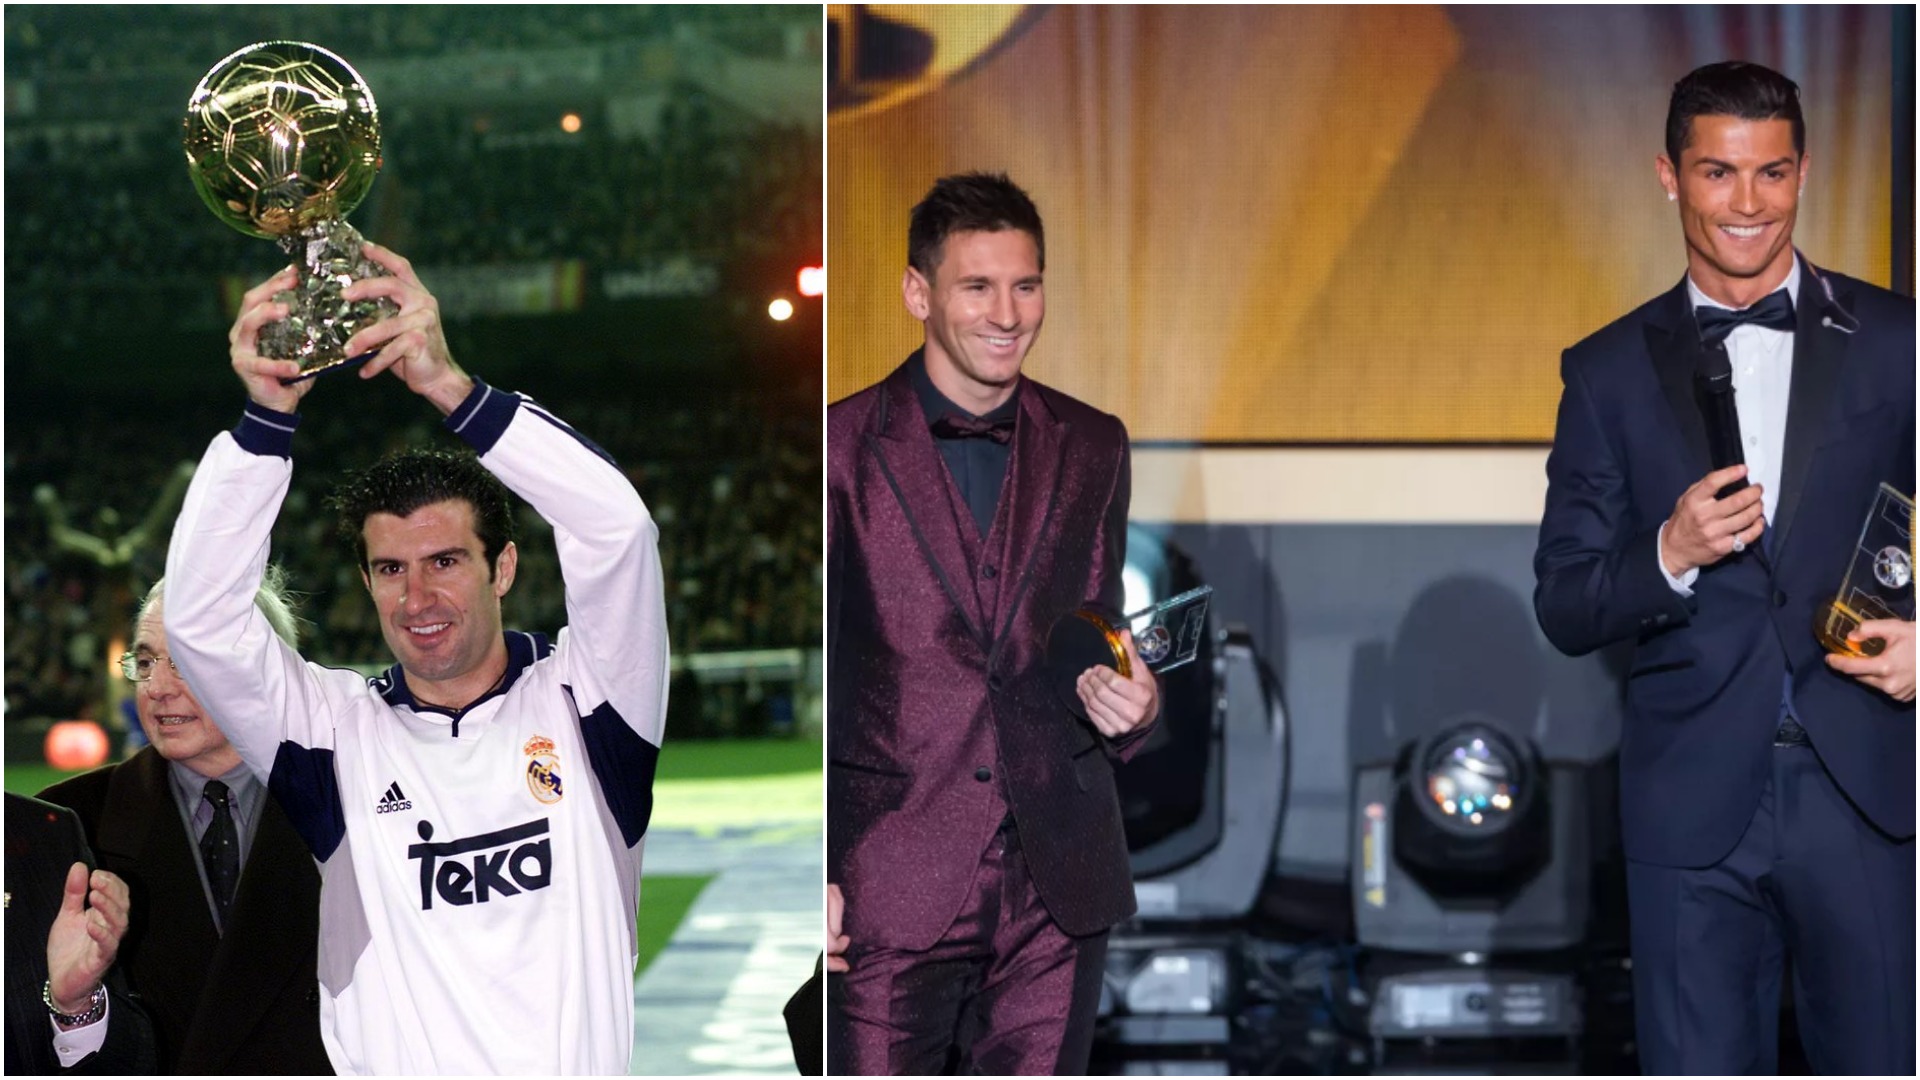 Analiza e Figos: Dikur kishte më shumë rivalitet, sot vetem Messi dhe CR7